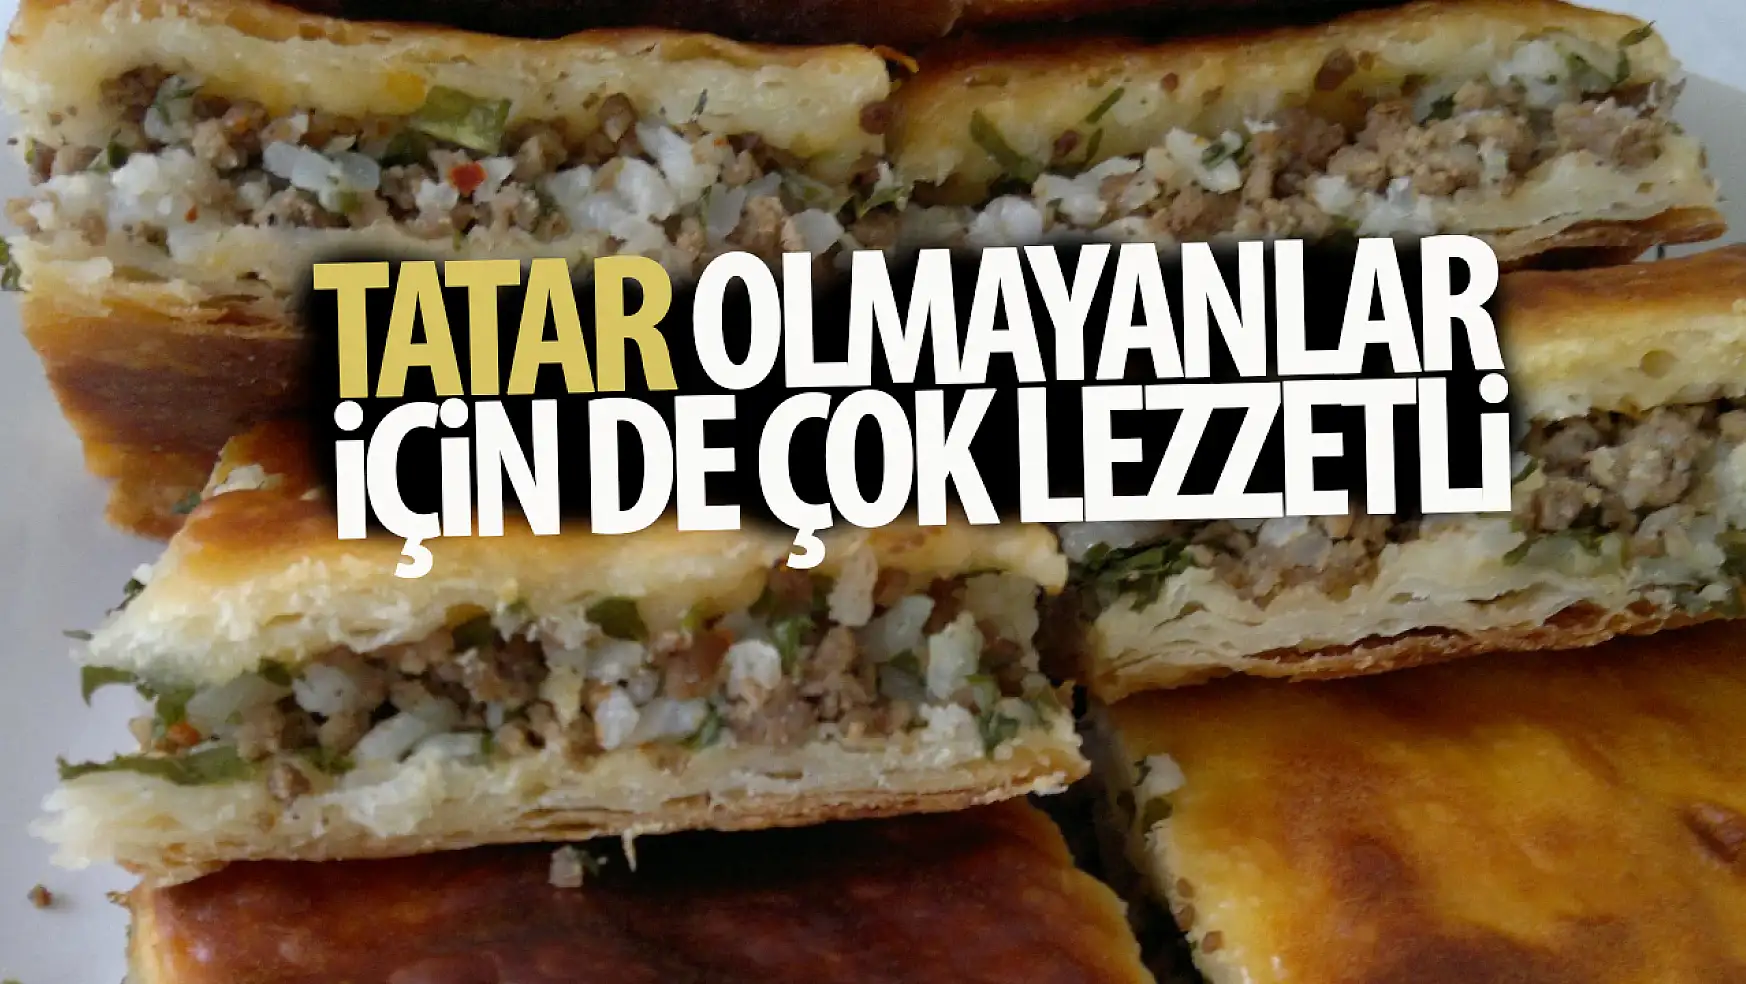 Tatarların enfes lezzeti göbete böreği püf noktaları neler? Pirinçli börek olur mu? işte o enfes tarif...